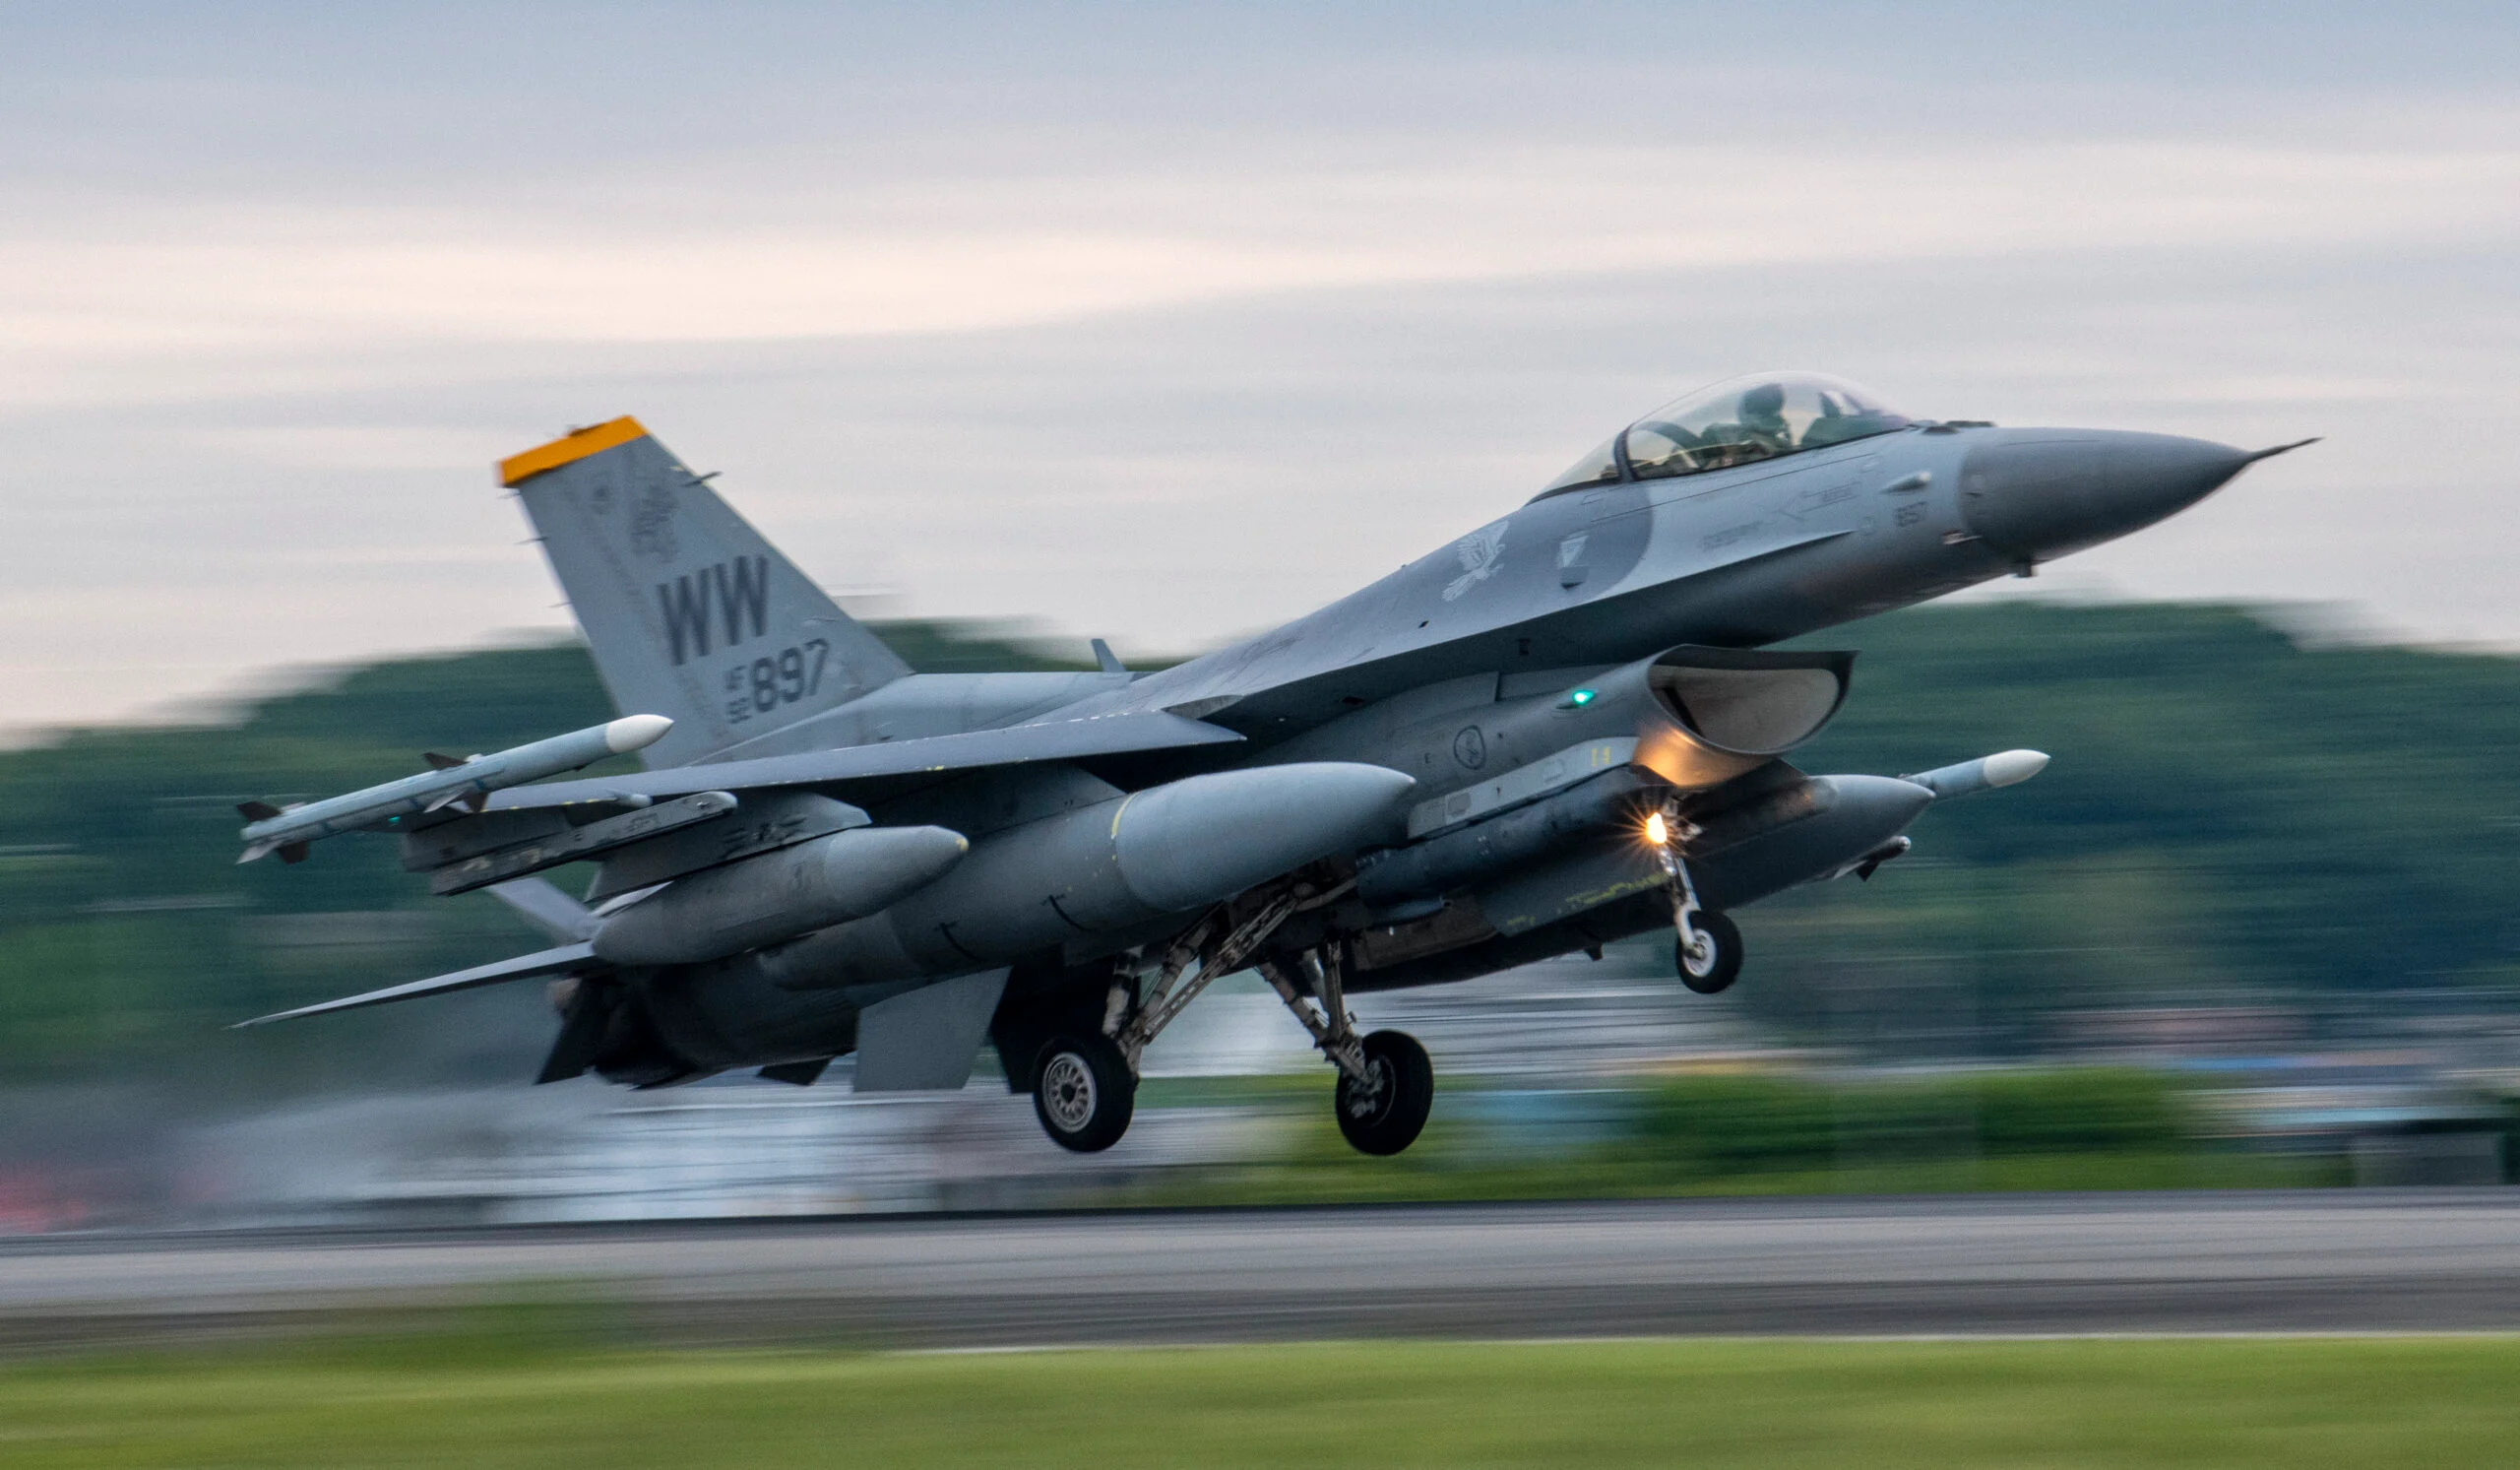 Бельгия летом снимет с вооружения первый истребитель F-16 Fighting Falcon в преддверии получения F-35 Lightning II